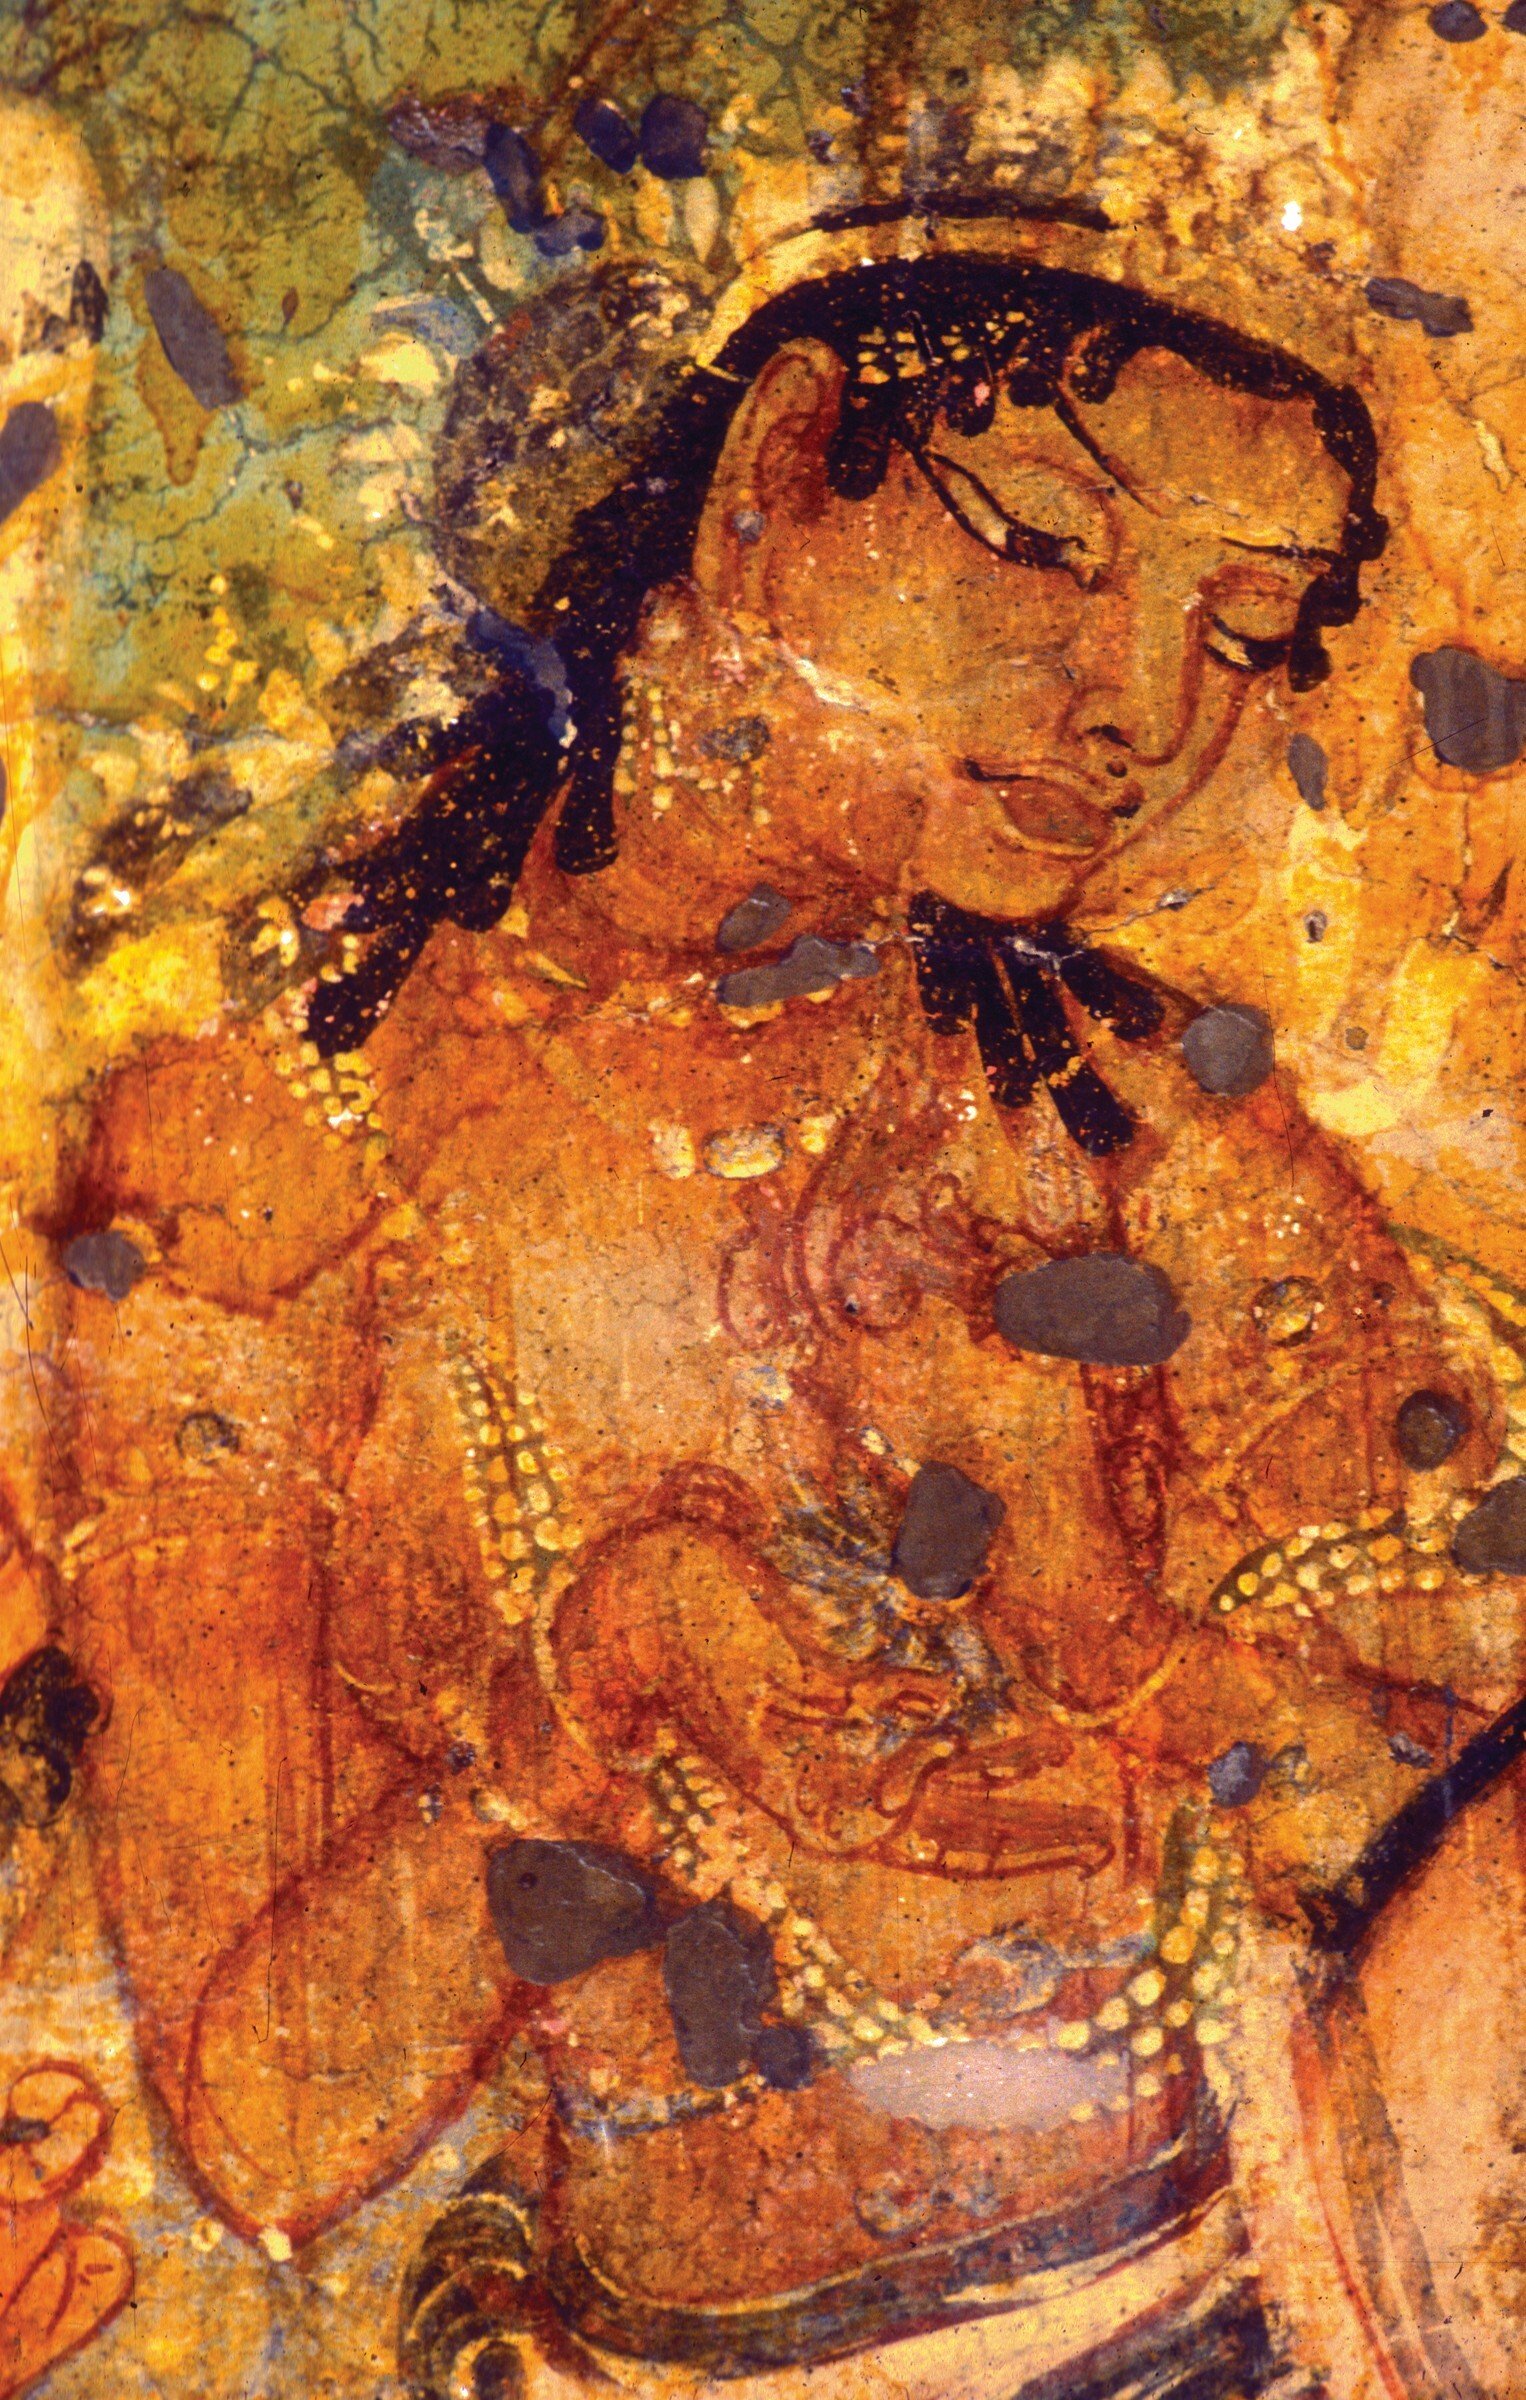 The original detail shot of the Ajanta painting of King Mahajanaka. Photo: Benoy Behl